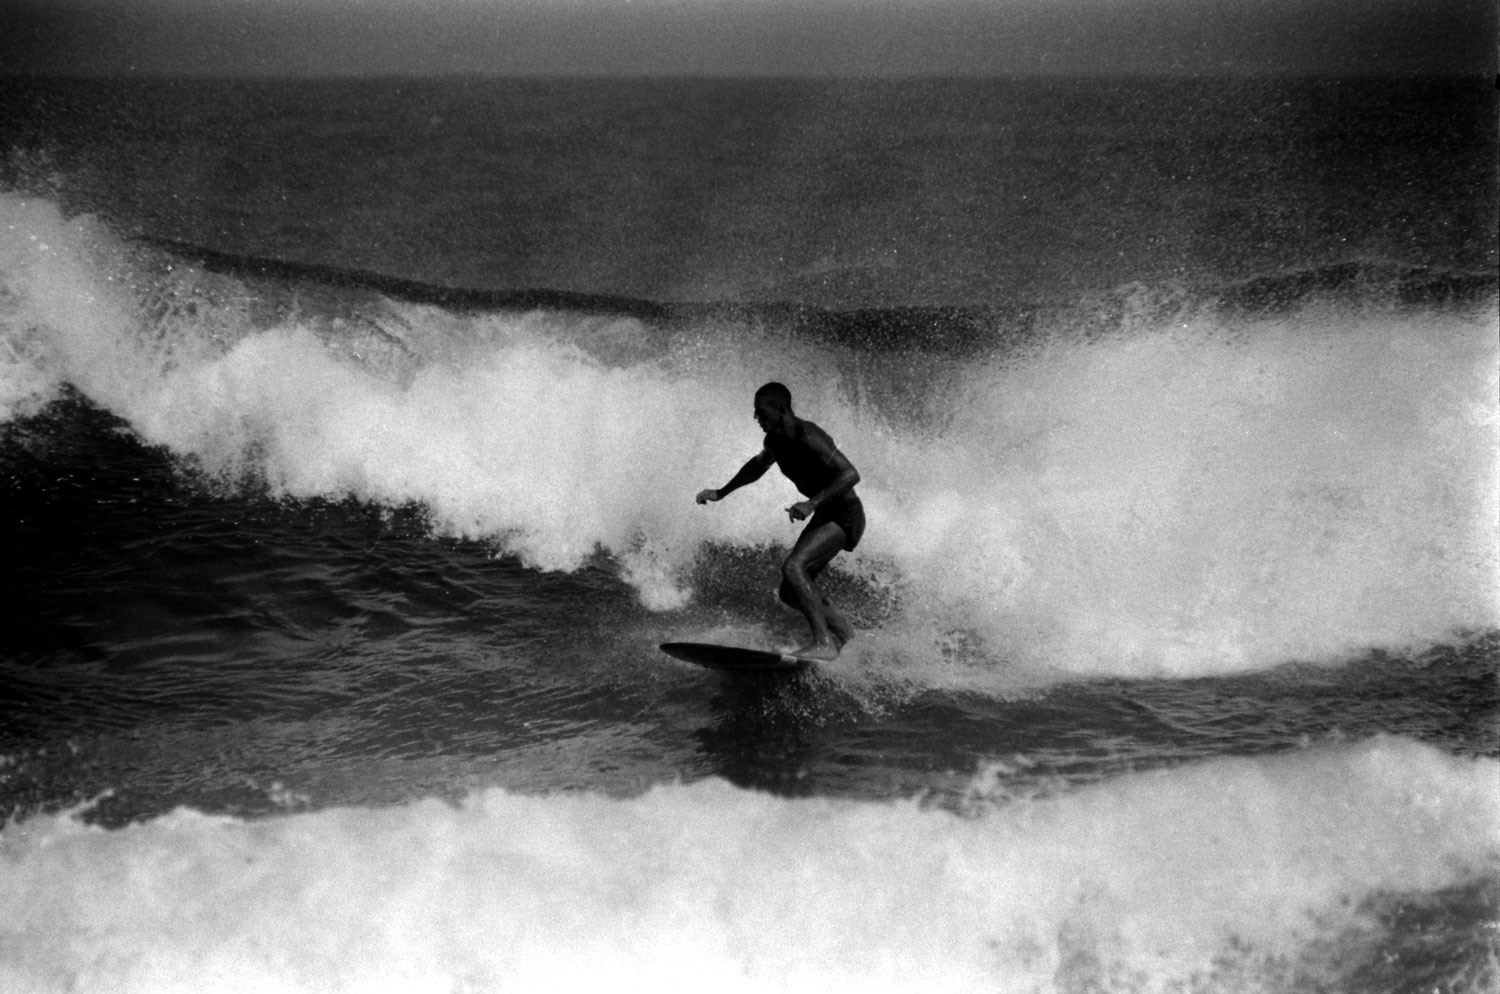 Surfing, Australia, 1958